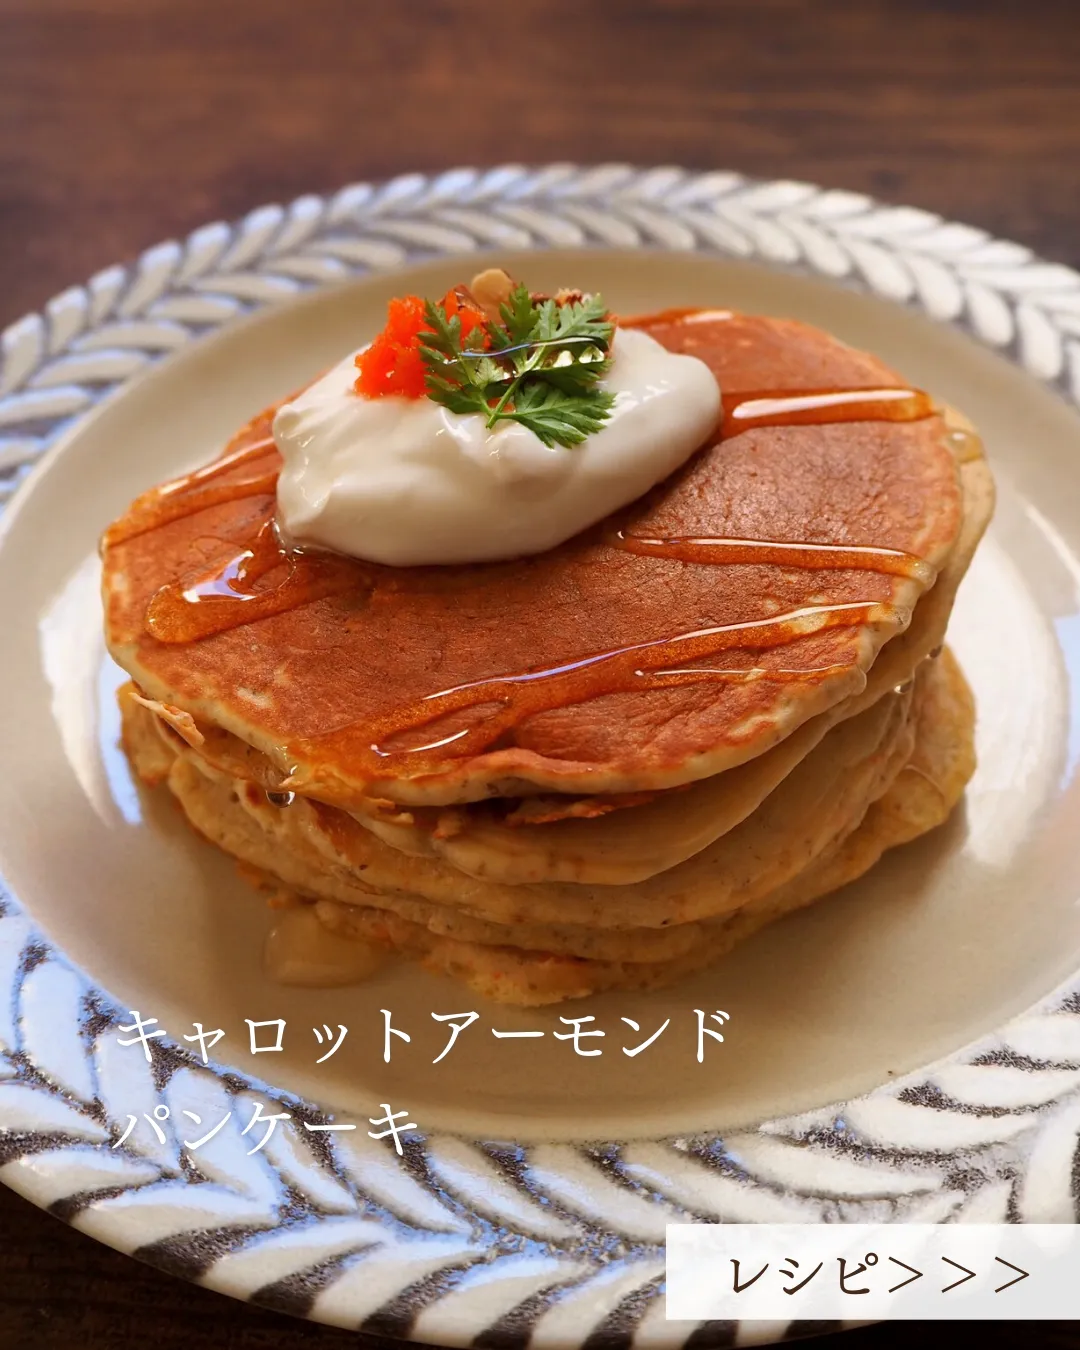 【みんなのパンケーキレシピ】キャロットアーモンドパンケーキ